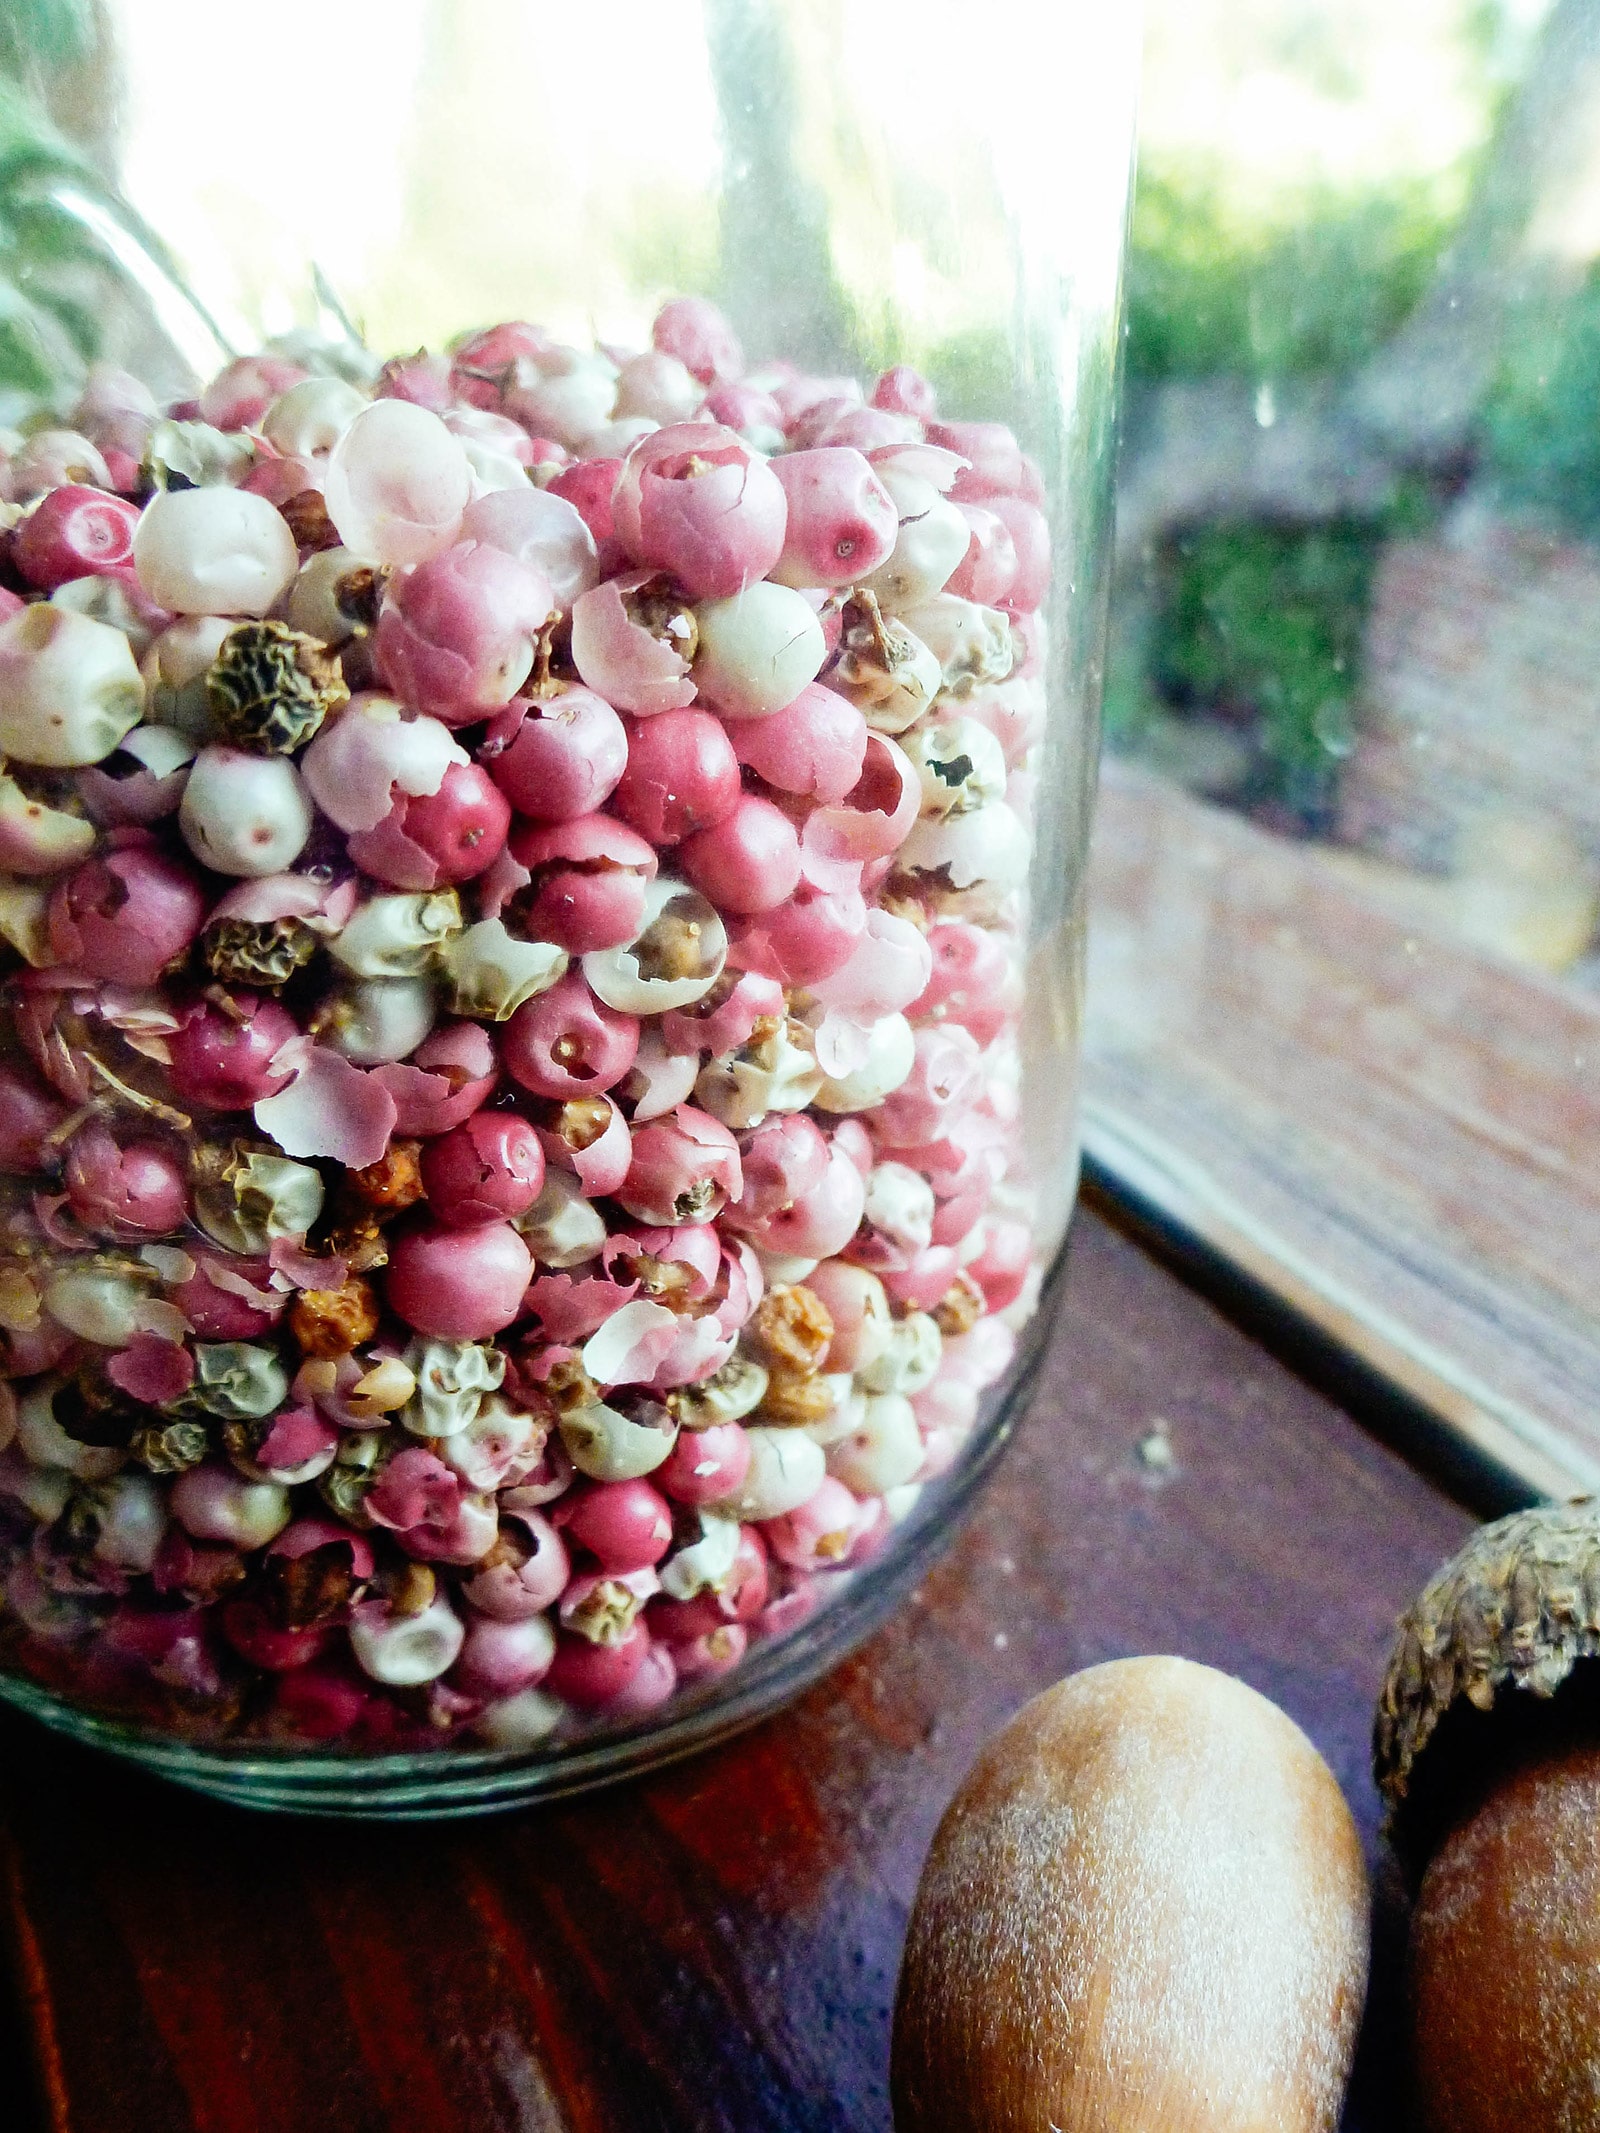 Peruvian pink peppercorns stored in a spice jar